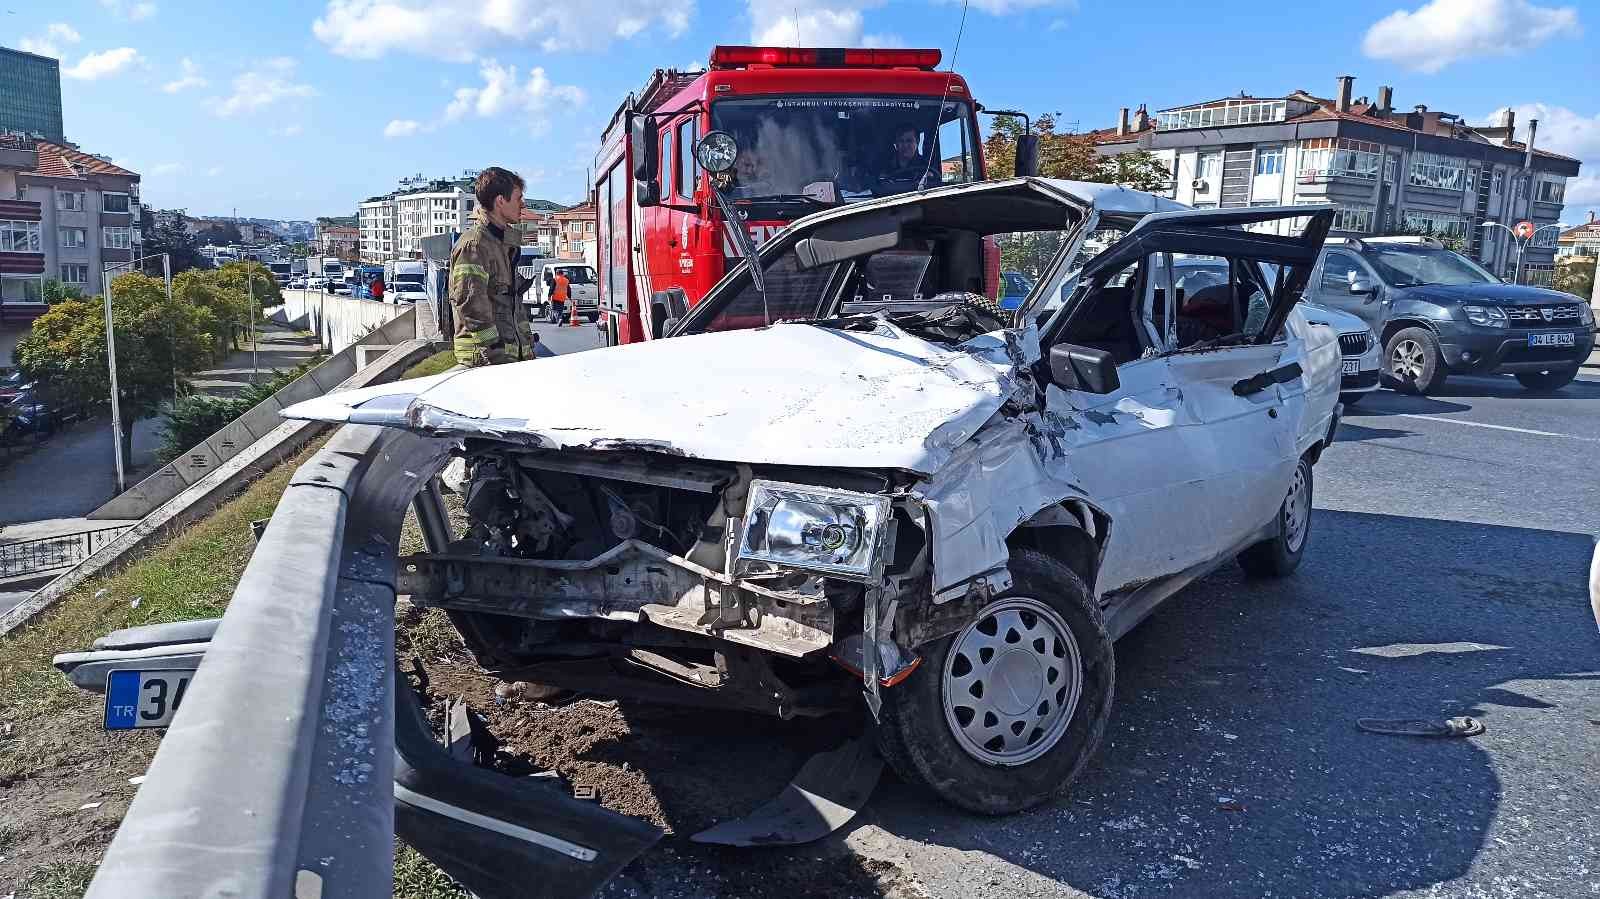 Büyükçekmece’de korkutan kaza: 1 yaralı #istanbul